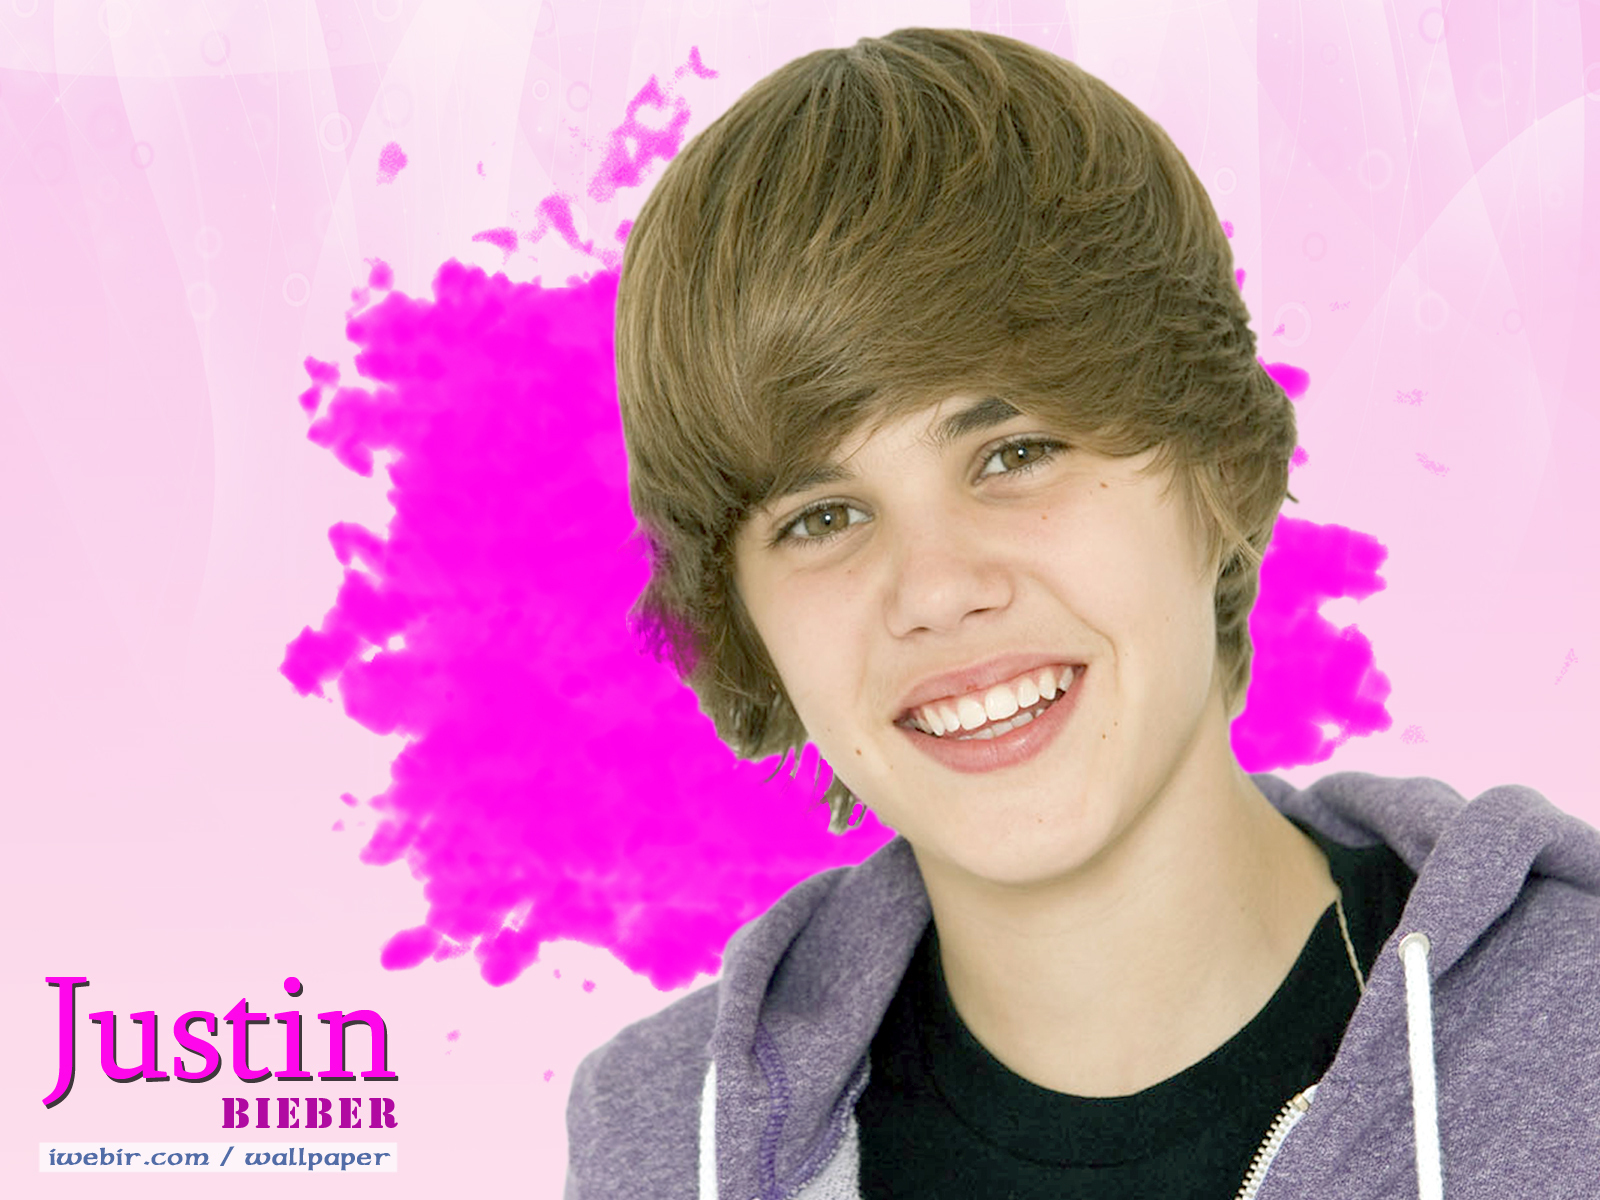 Justin Bieber 2010 Hot Wallpapers - Justin Bieber Wallpaper (10230792) -  Fanpop